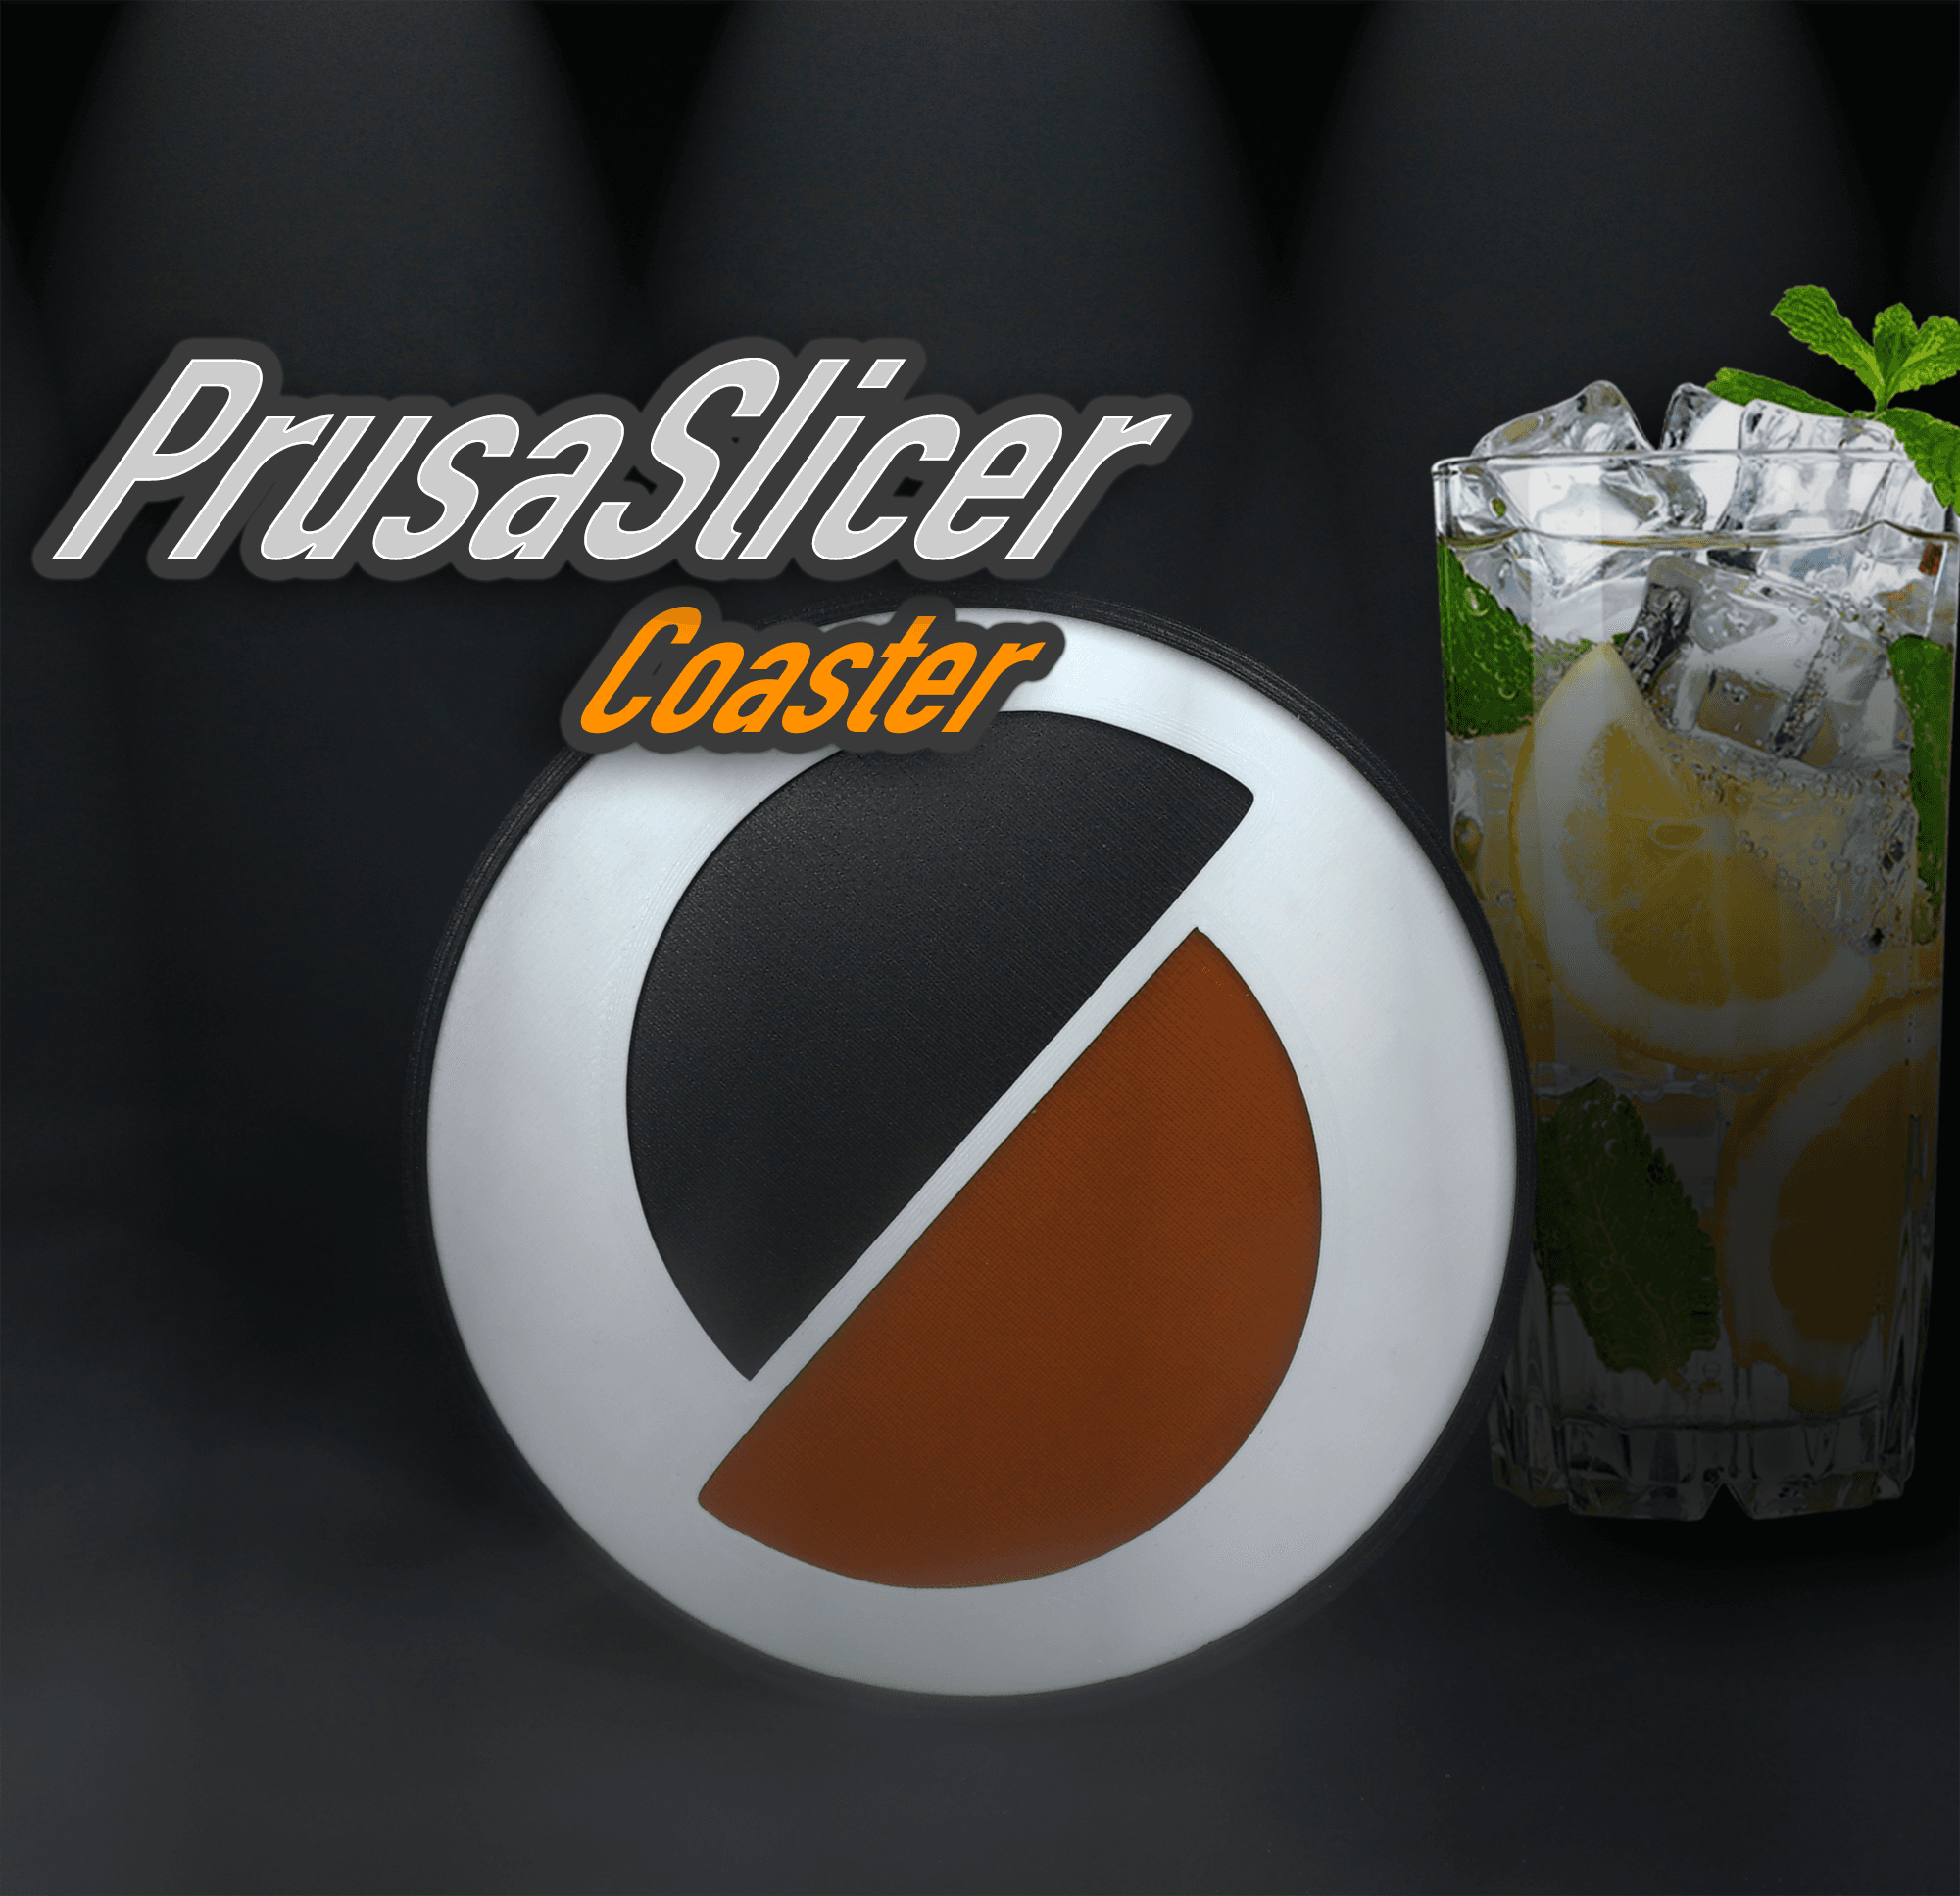 PrusaSlicer Coaster 3d model